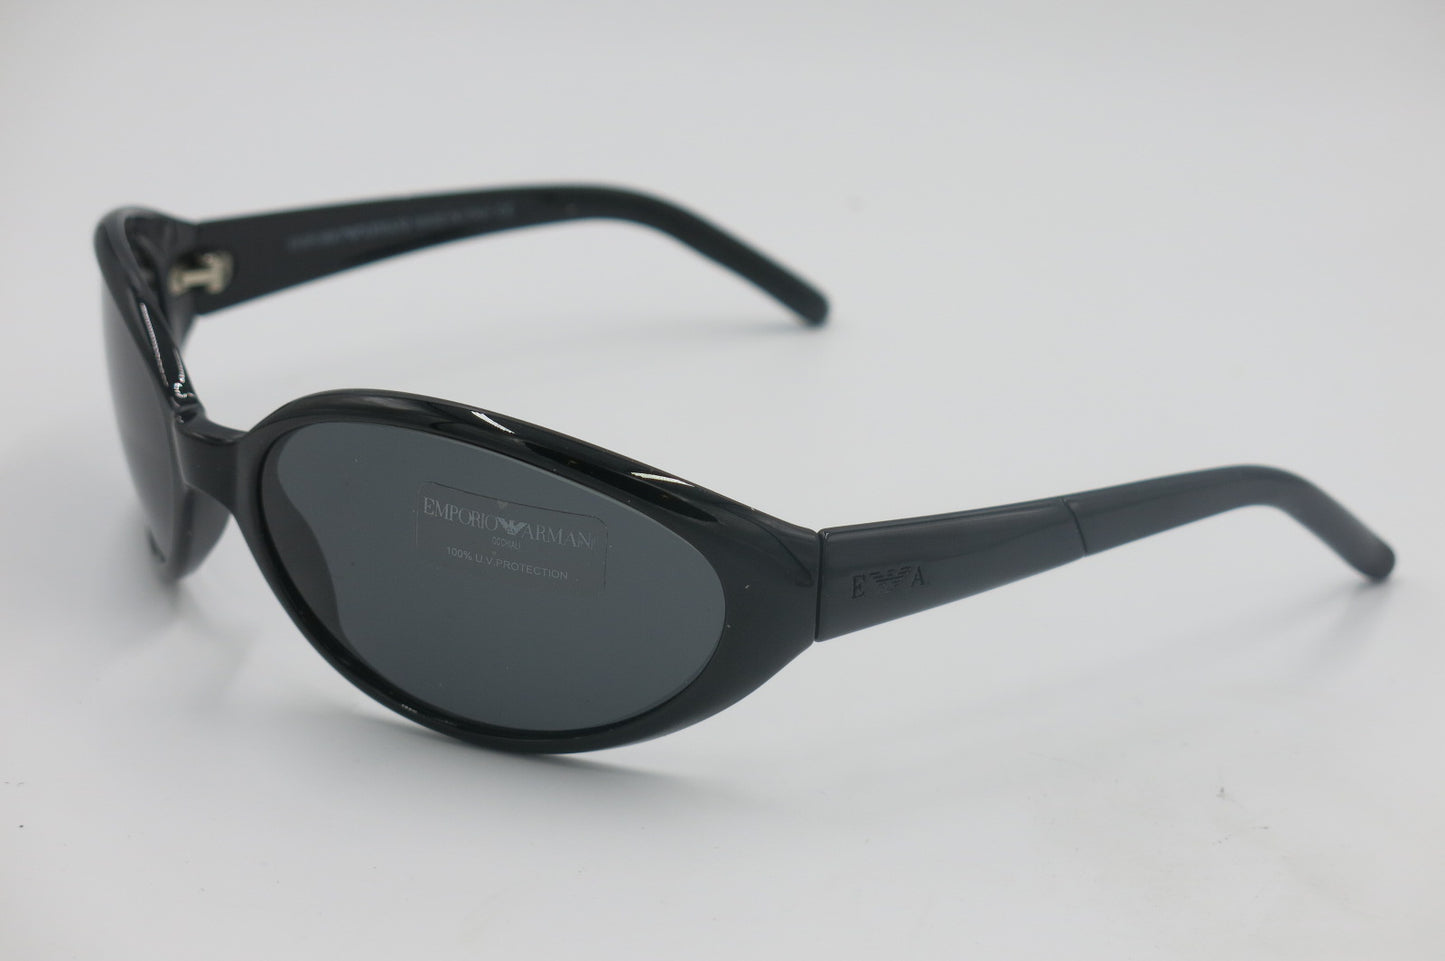 Emporio Armani Sunglasses 574S